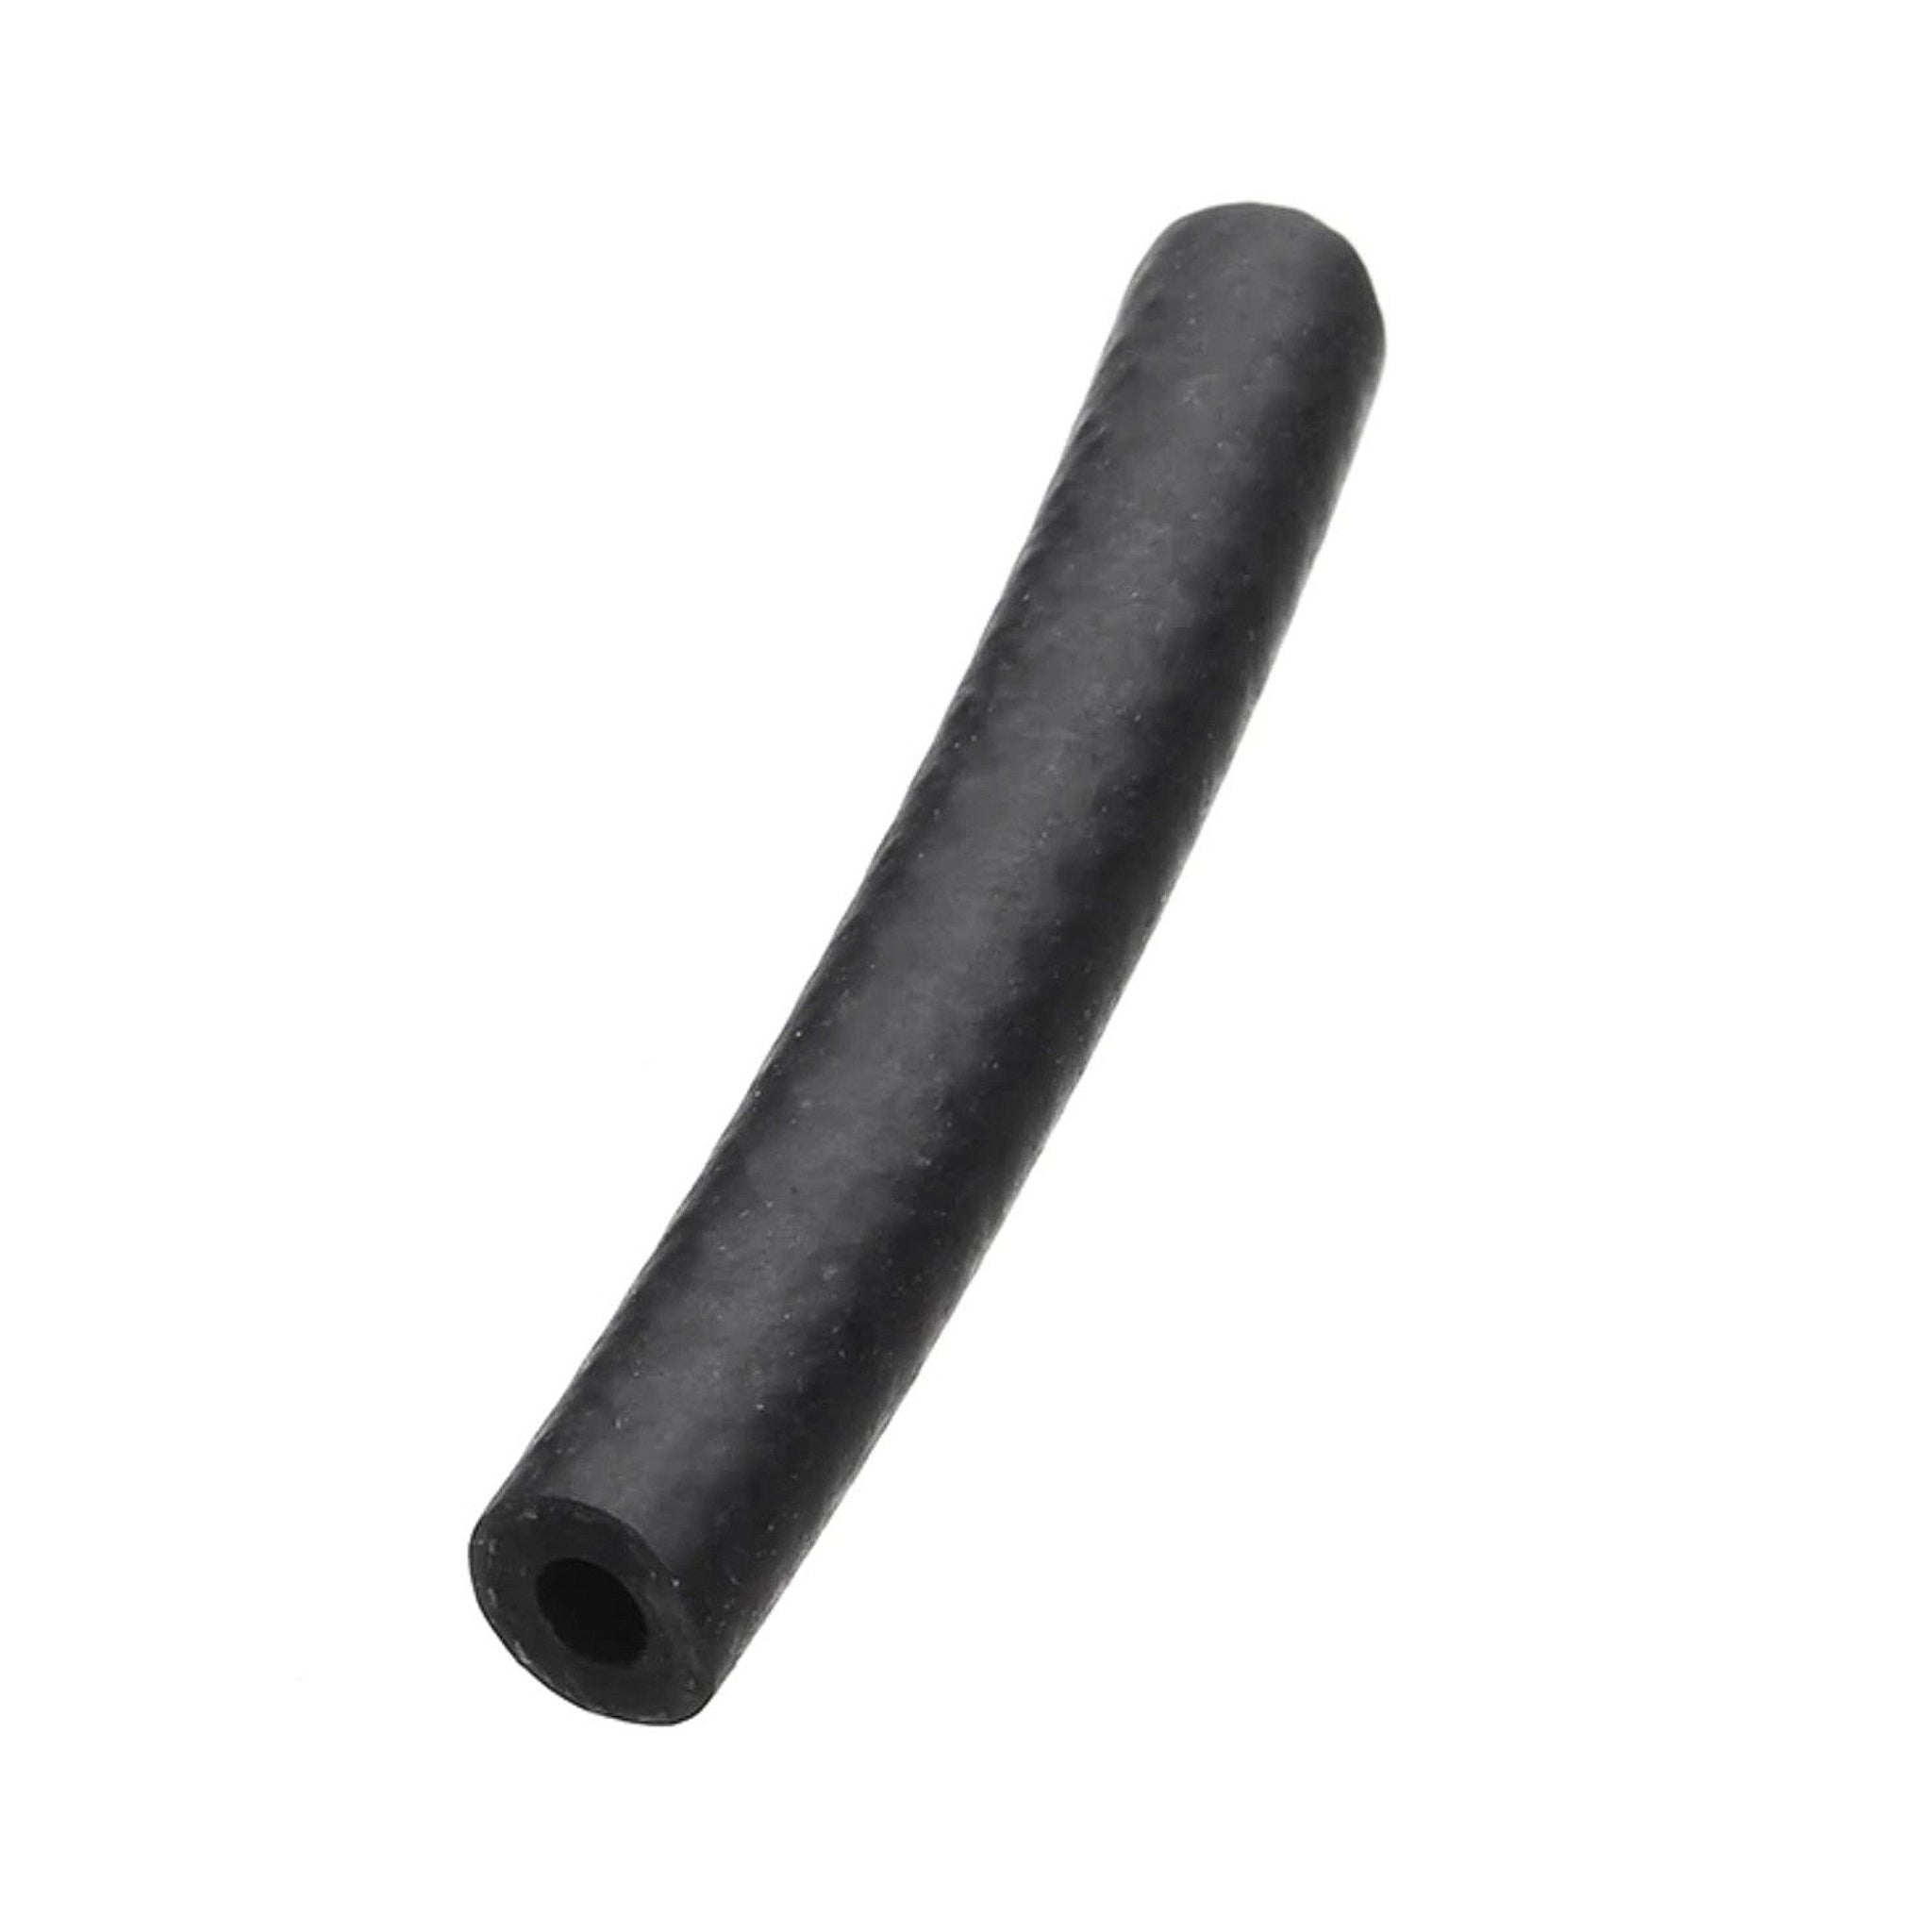 Fuel Hose Sleeve - Reinforced Rubber Black ID-Ø 3mm / OD-Ø 9.5mm